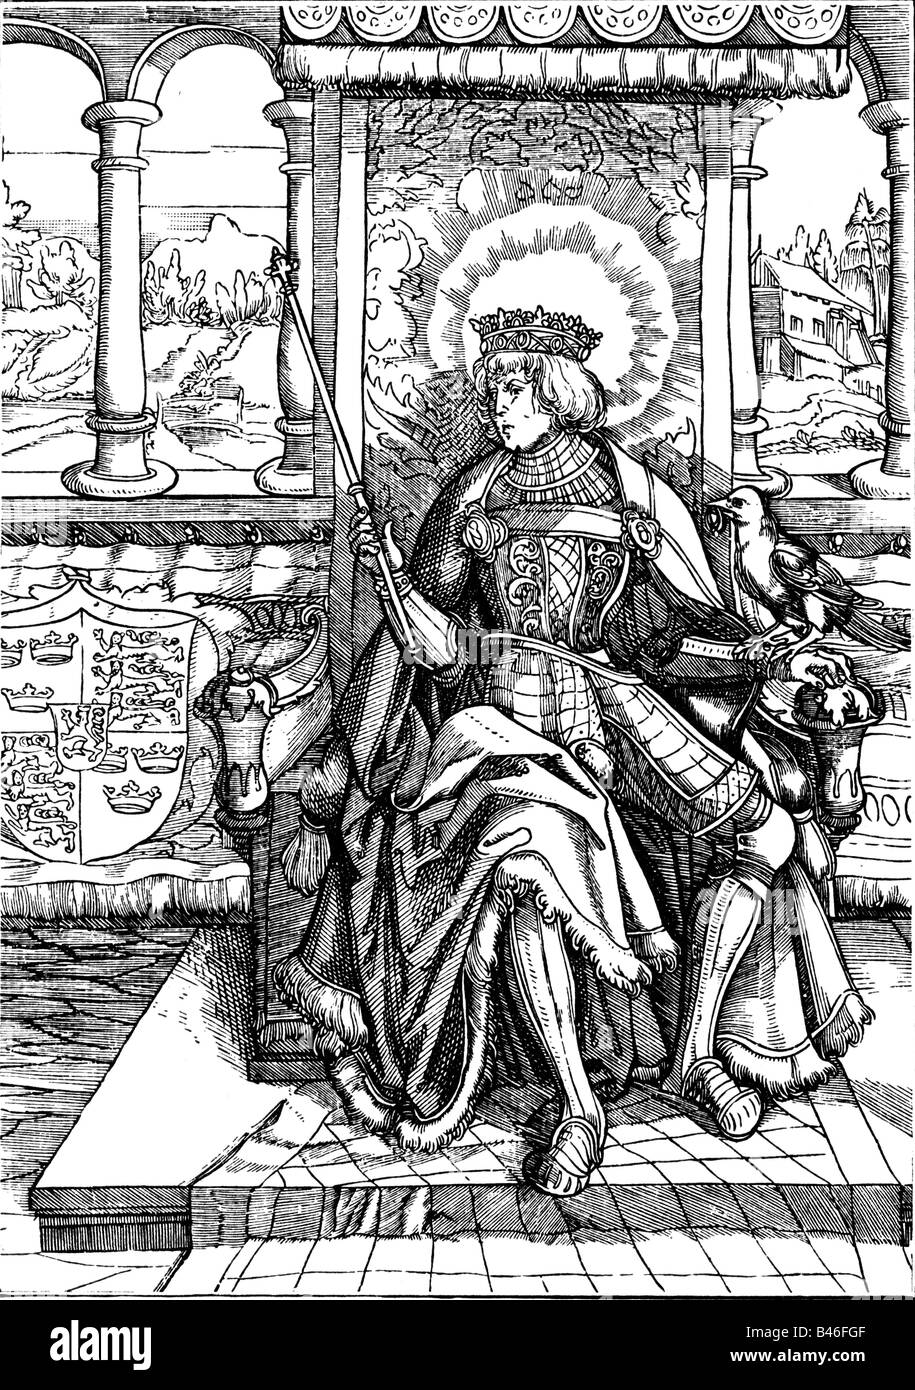 Oswald de Northumbrie, King, saint, vers 604 - 5.8.642, pleine longueur, gravure sur cuivre, par Leonhard Beck (vers 1480 - 1542), l'Allemagne, première moitié du xvie siècle, l'artiste n'a pas d'auteur pour être effacé Banque D'Images